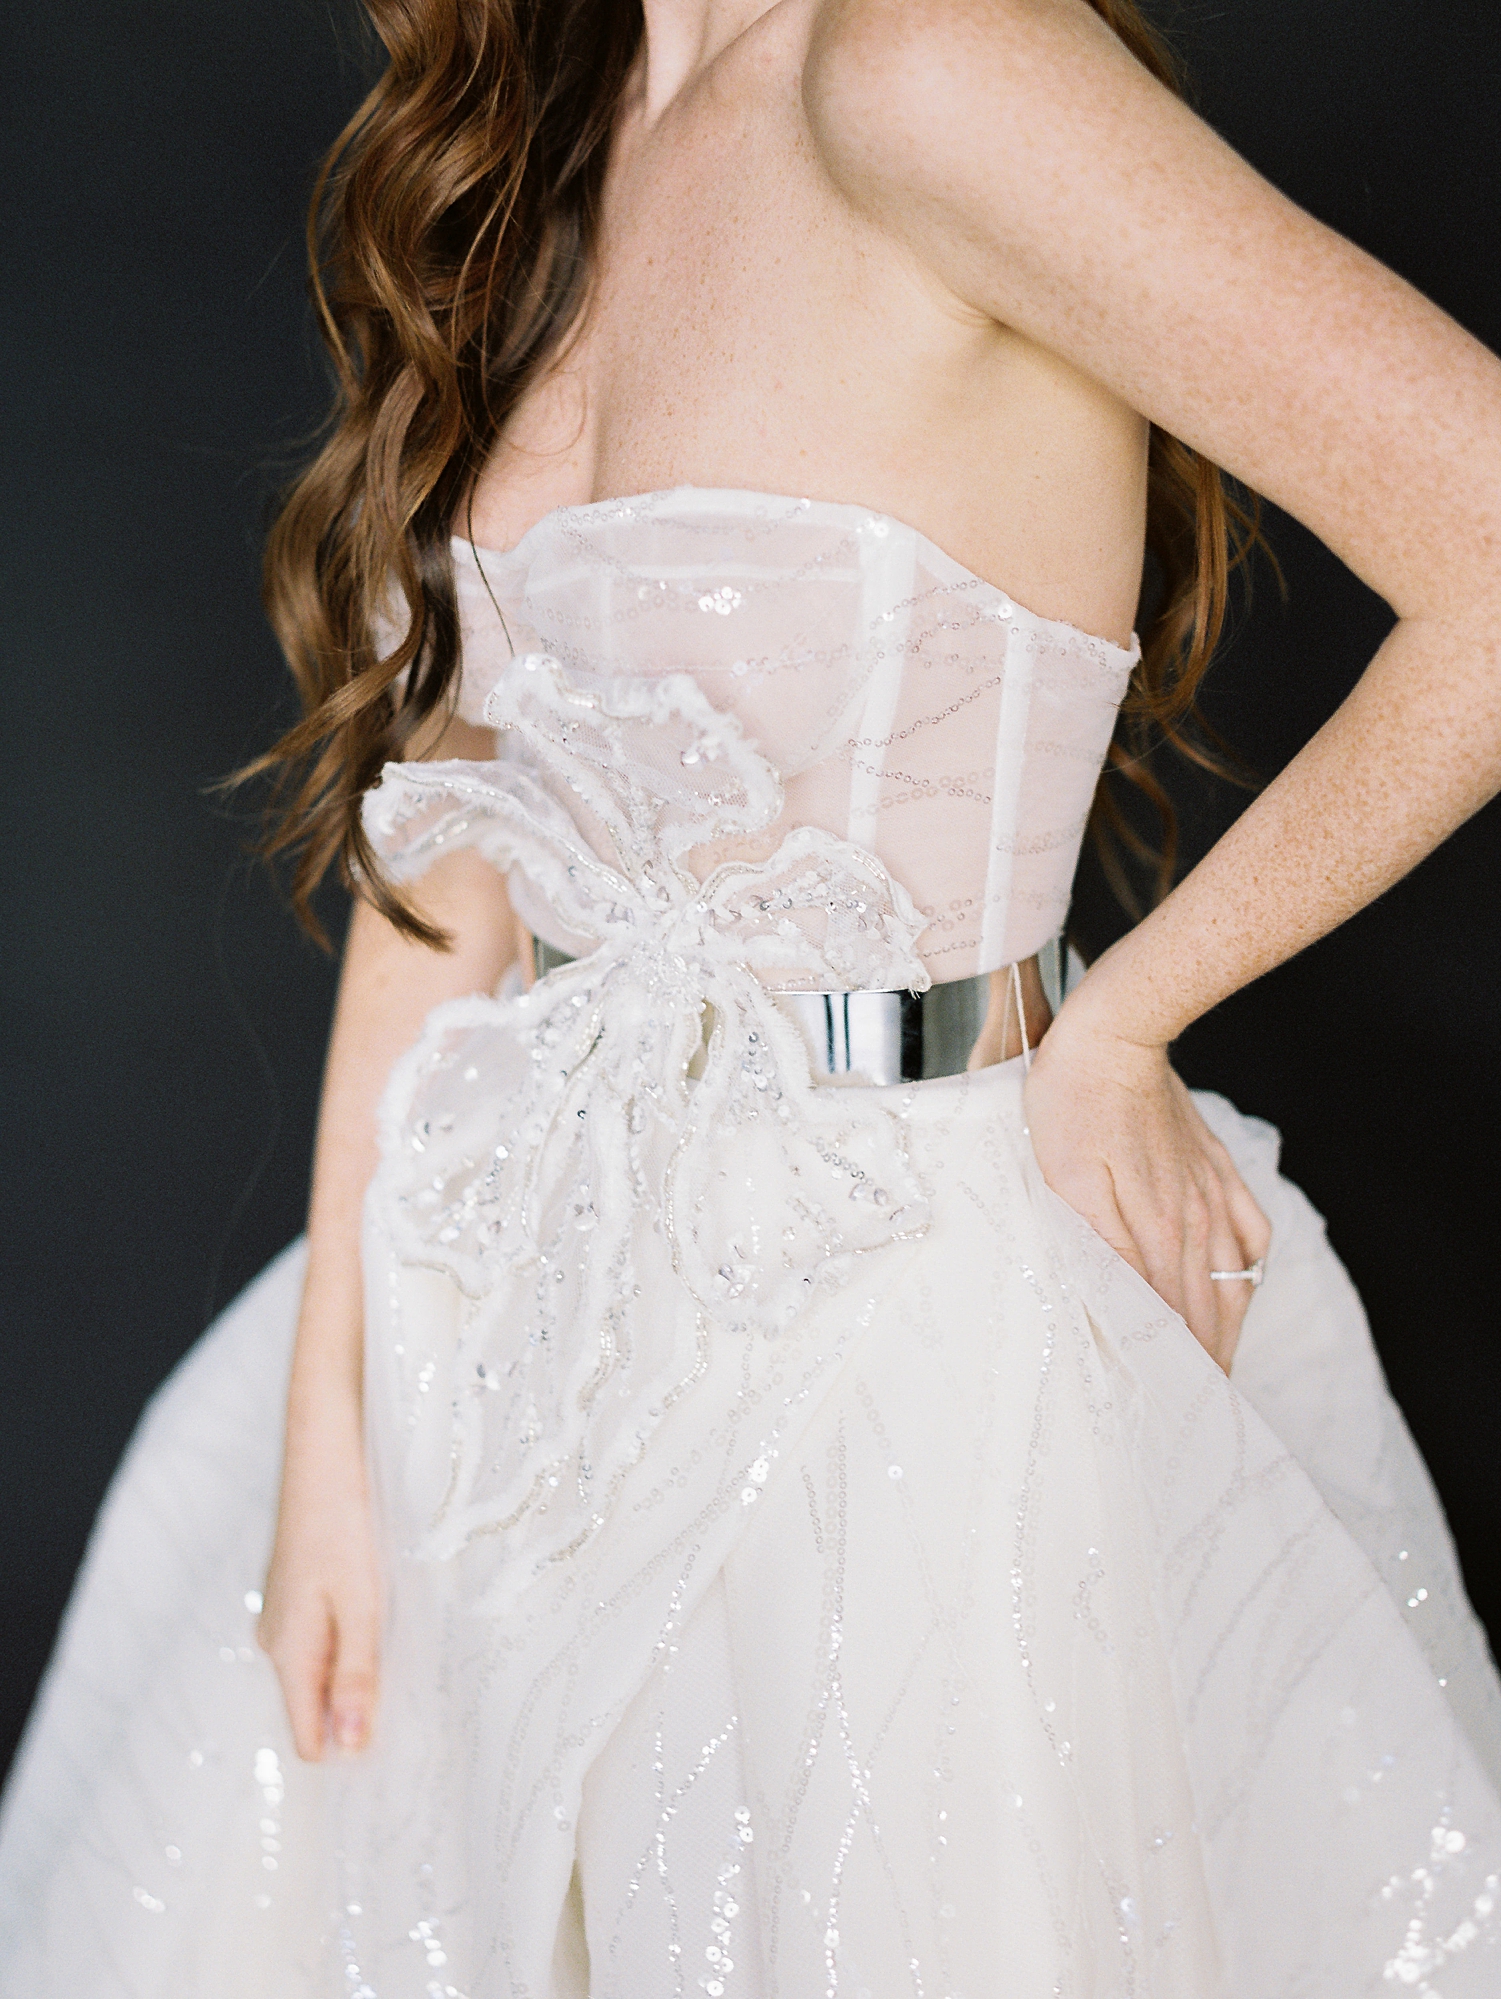 girls midriff in sparkling white wedding gown silver belt